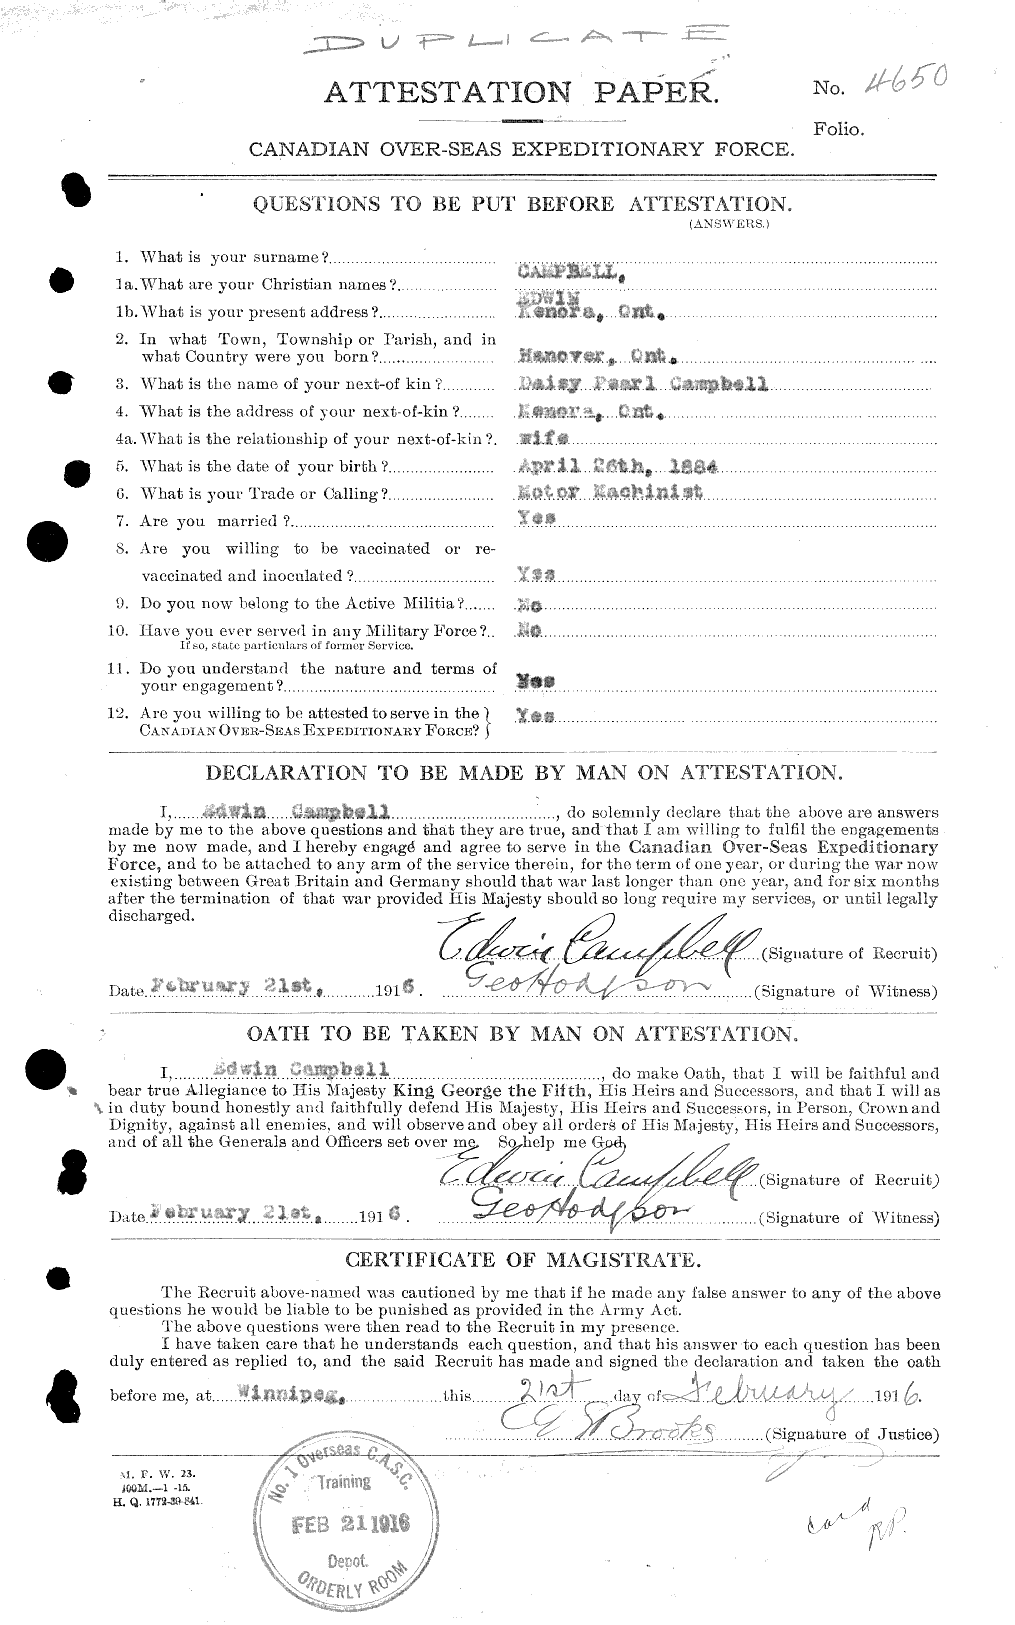 Dossiers du Personnel de la Première Guerre mondiale - CEC 003654a